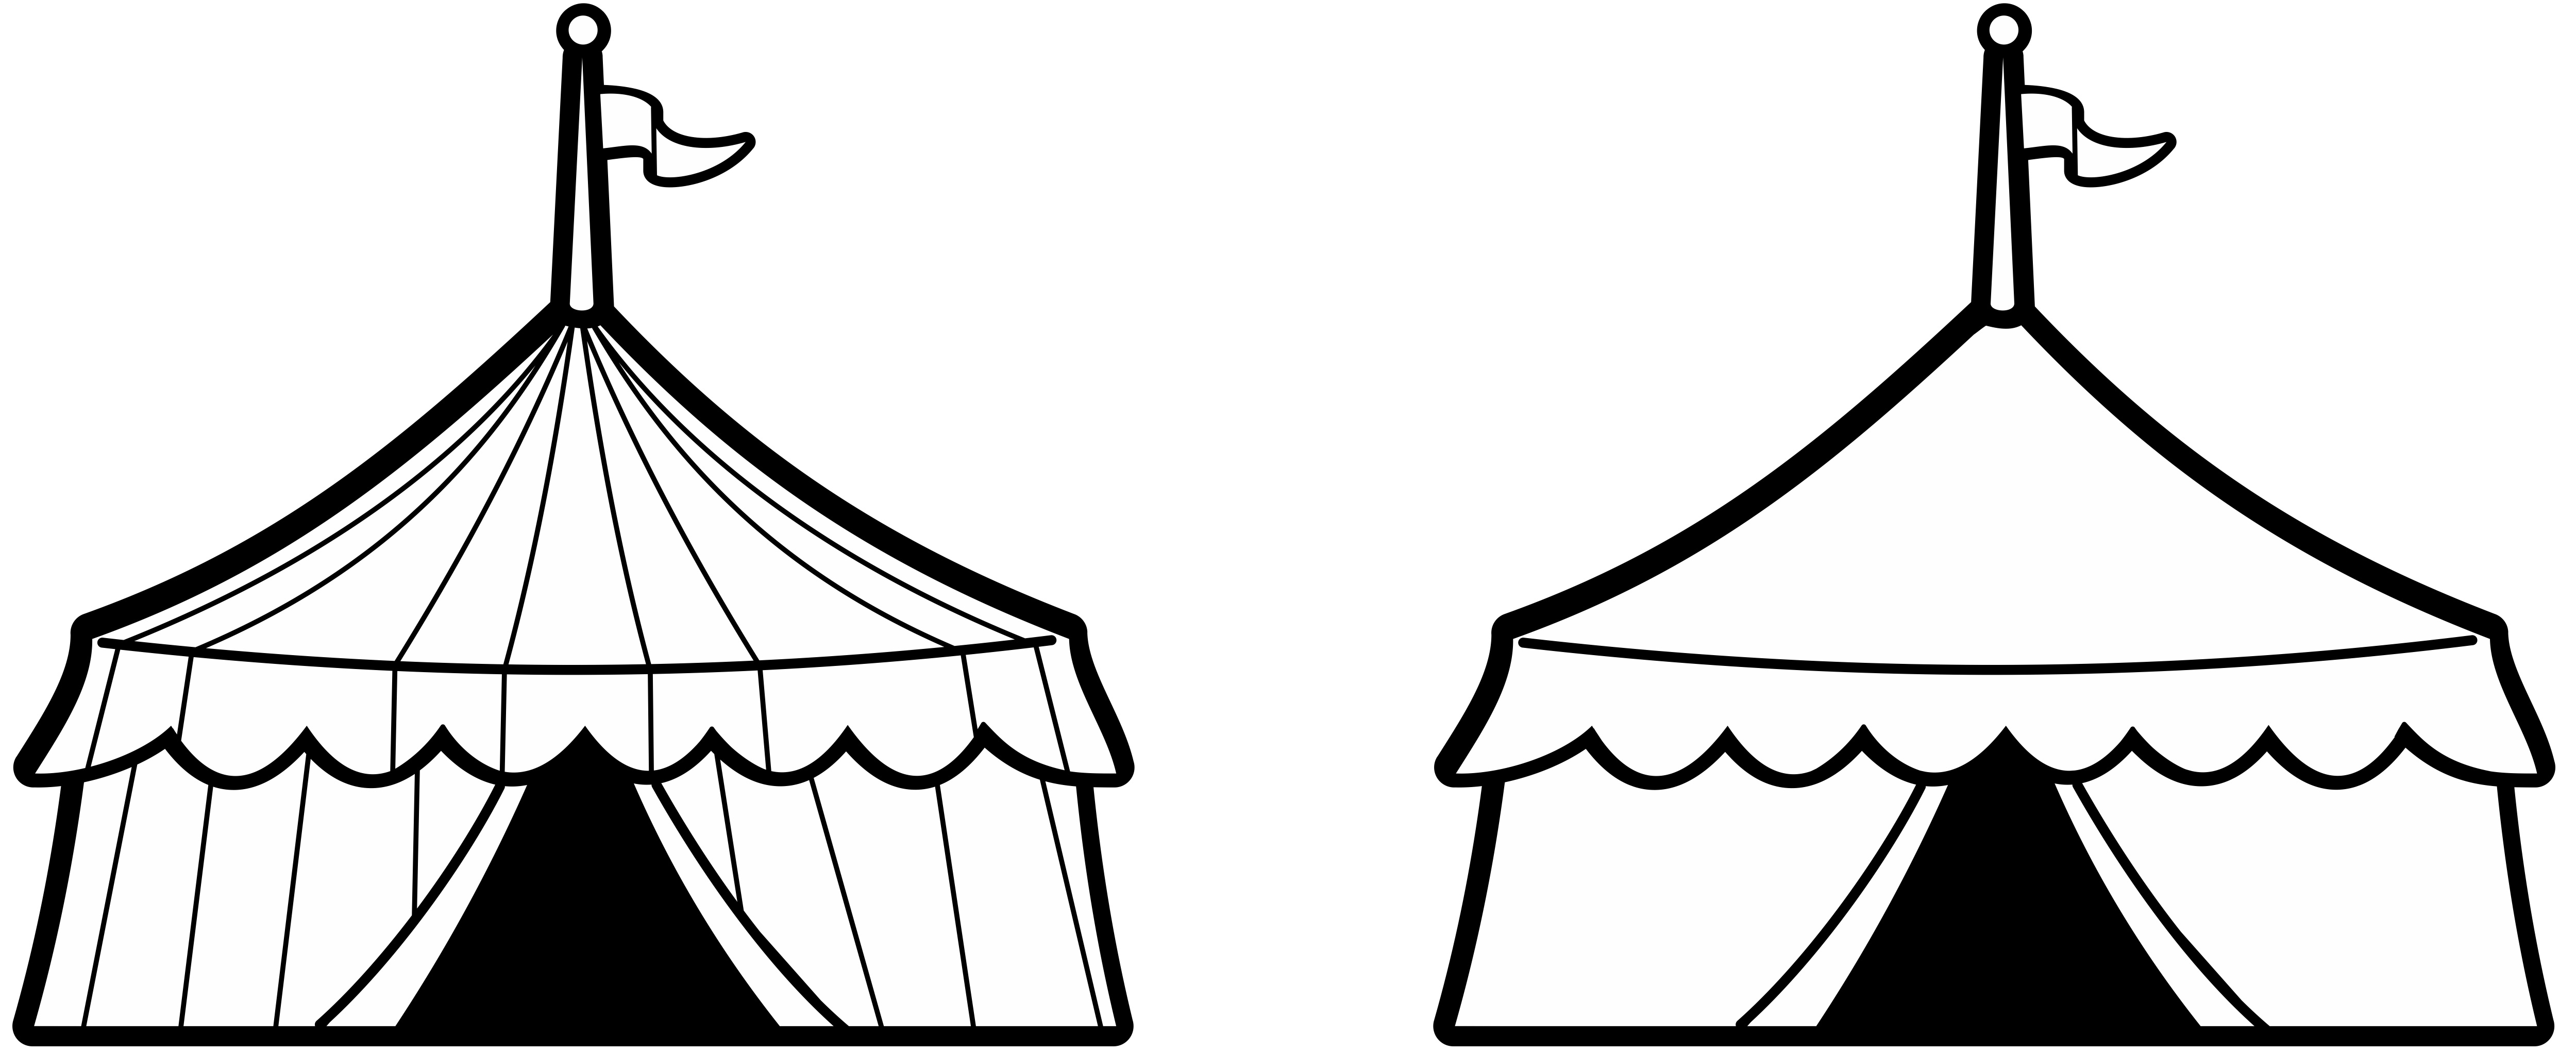 Цирк шапито, шатер